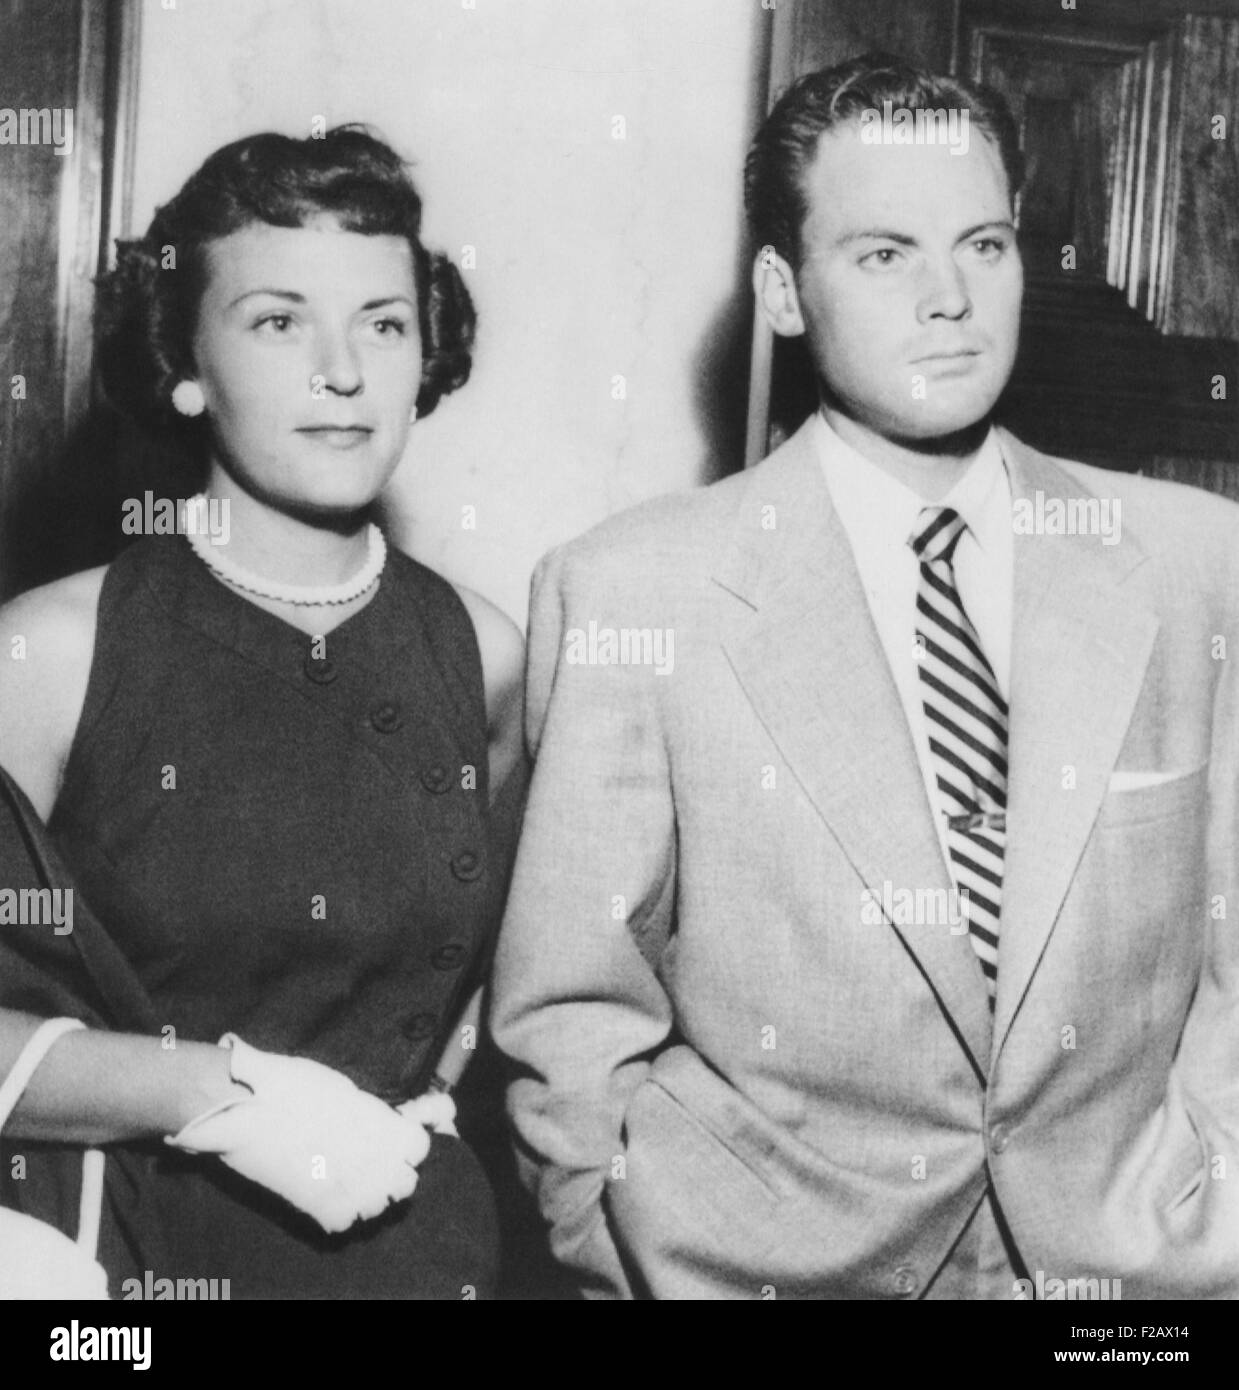 Attore John Agar in tribunale il 20 luglio 1950 a faccia per guida ubriaco oneri. Con lui è sua moglie Loretta Barnett pettini Agar. (CSU 2015 11 1178) Foto Stock